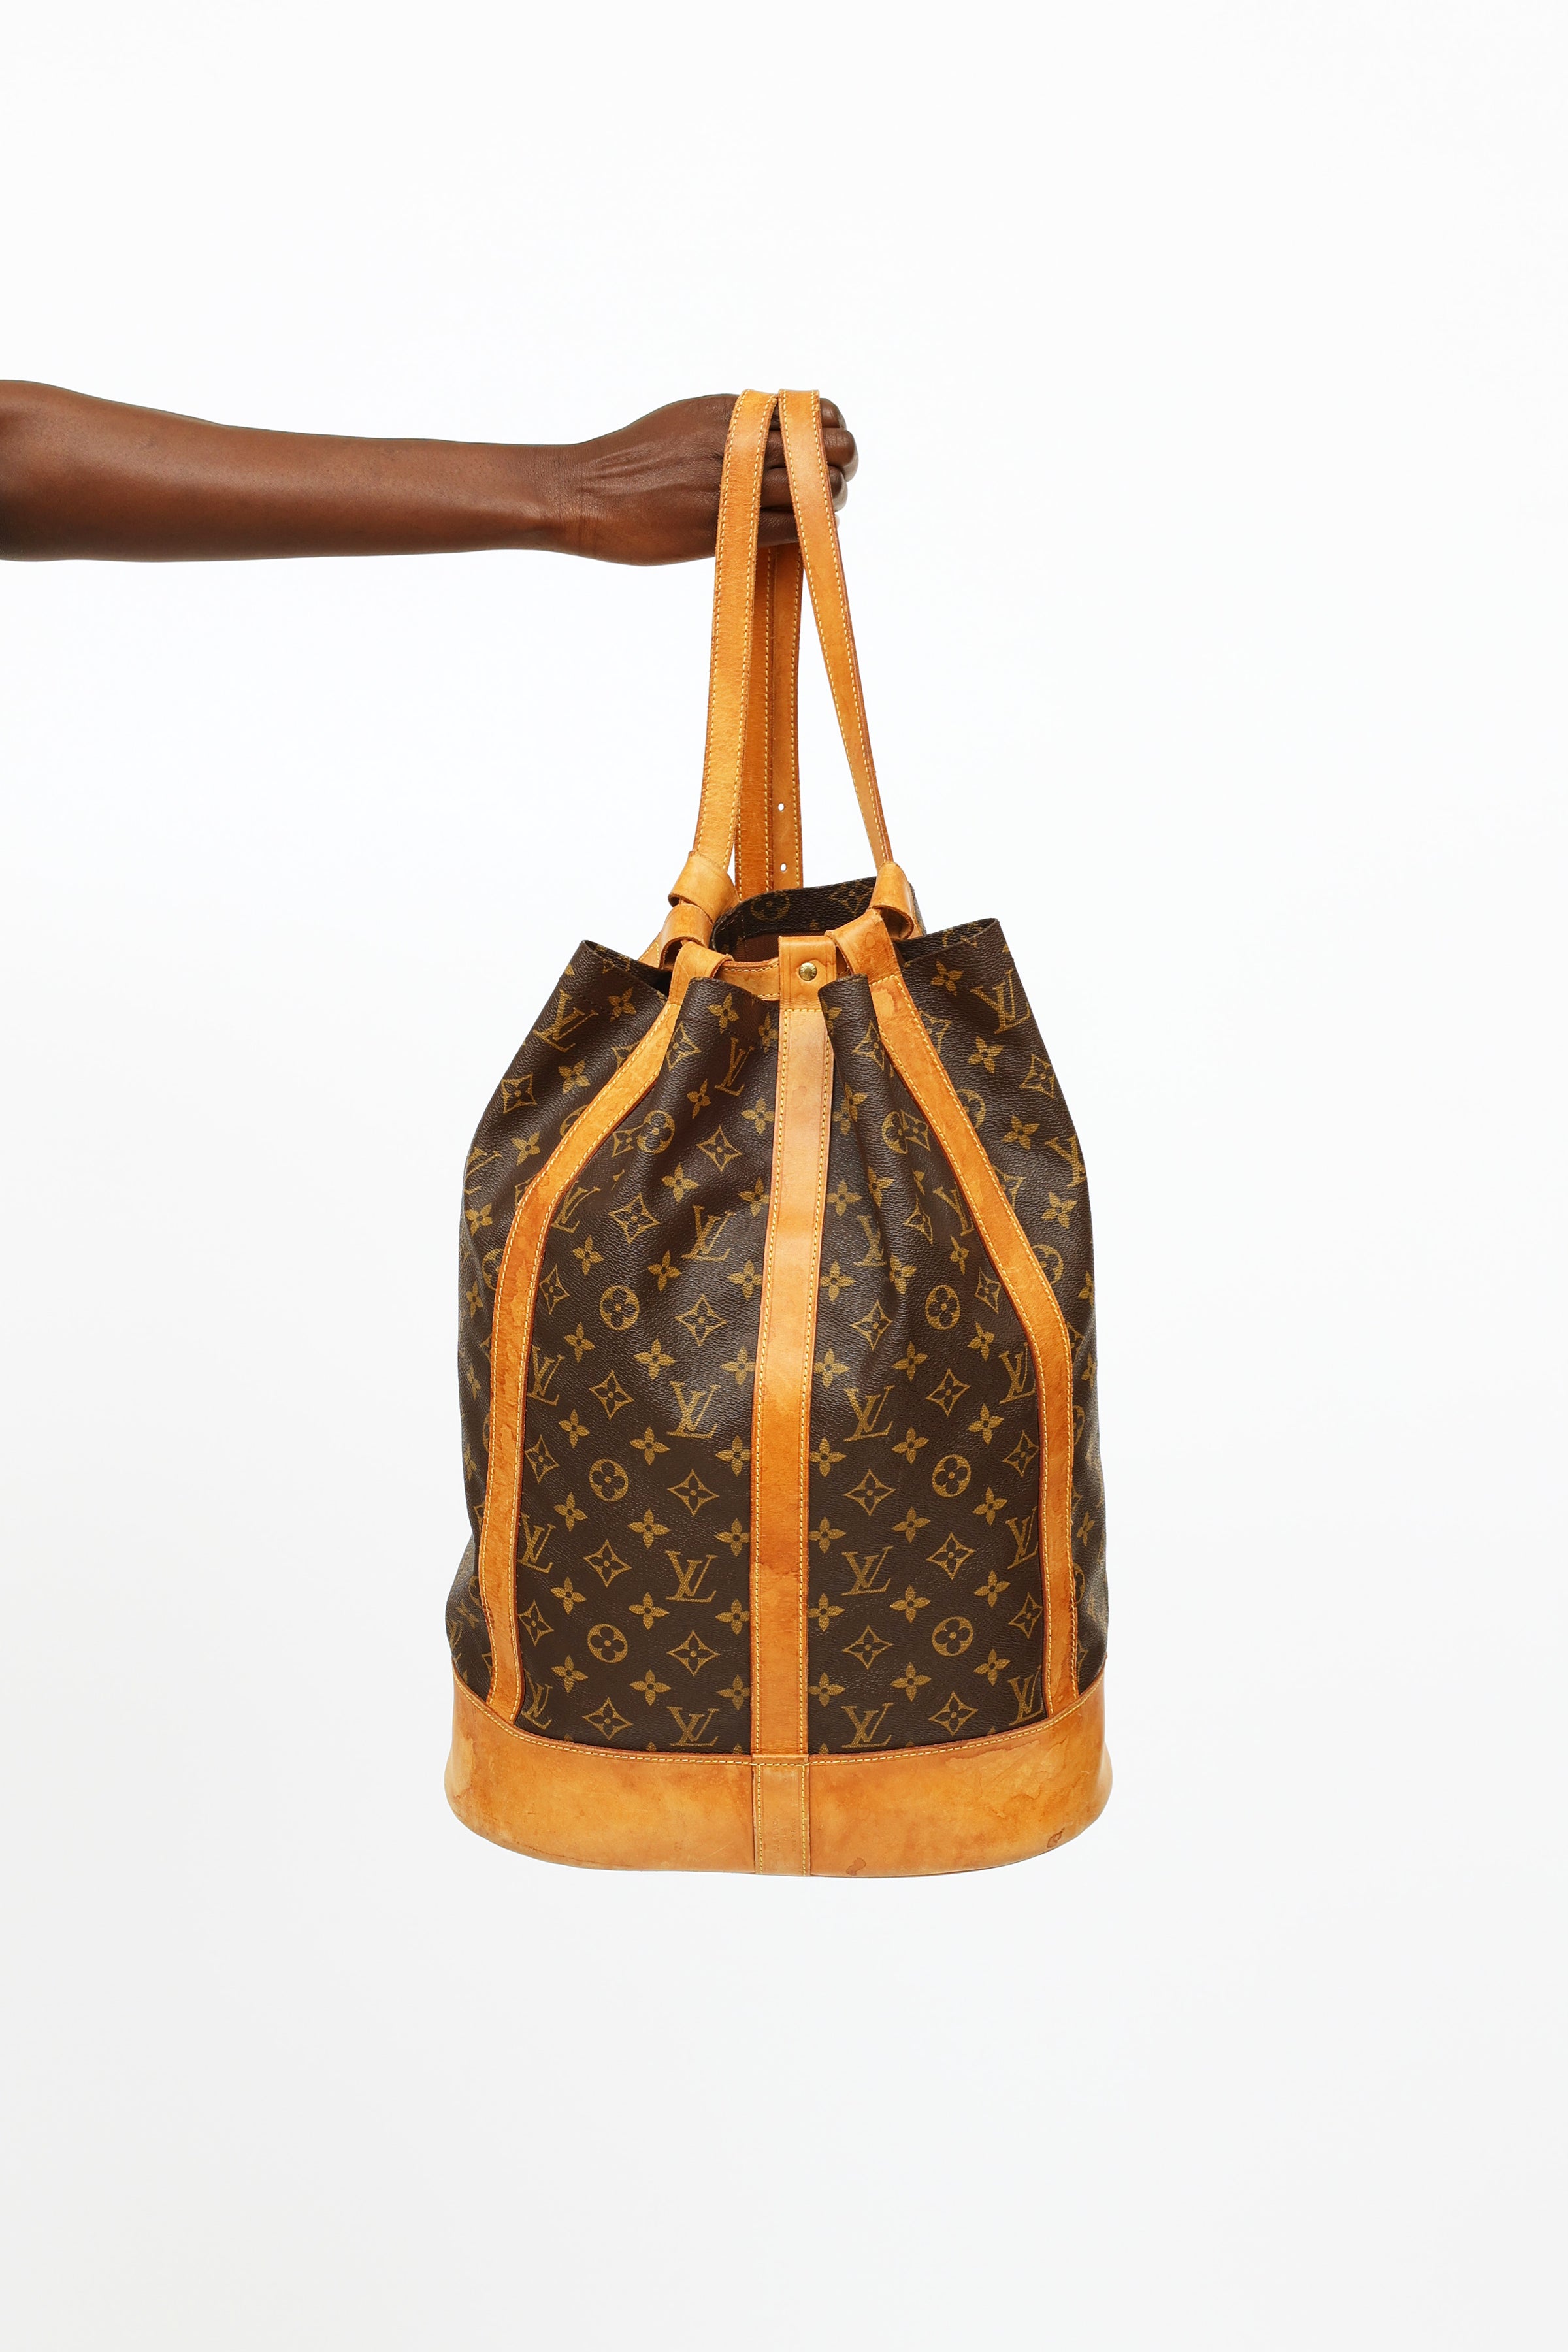 Louis Vuitton, Bags, Louis Vuitton Back Pack